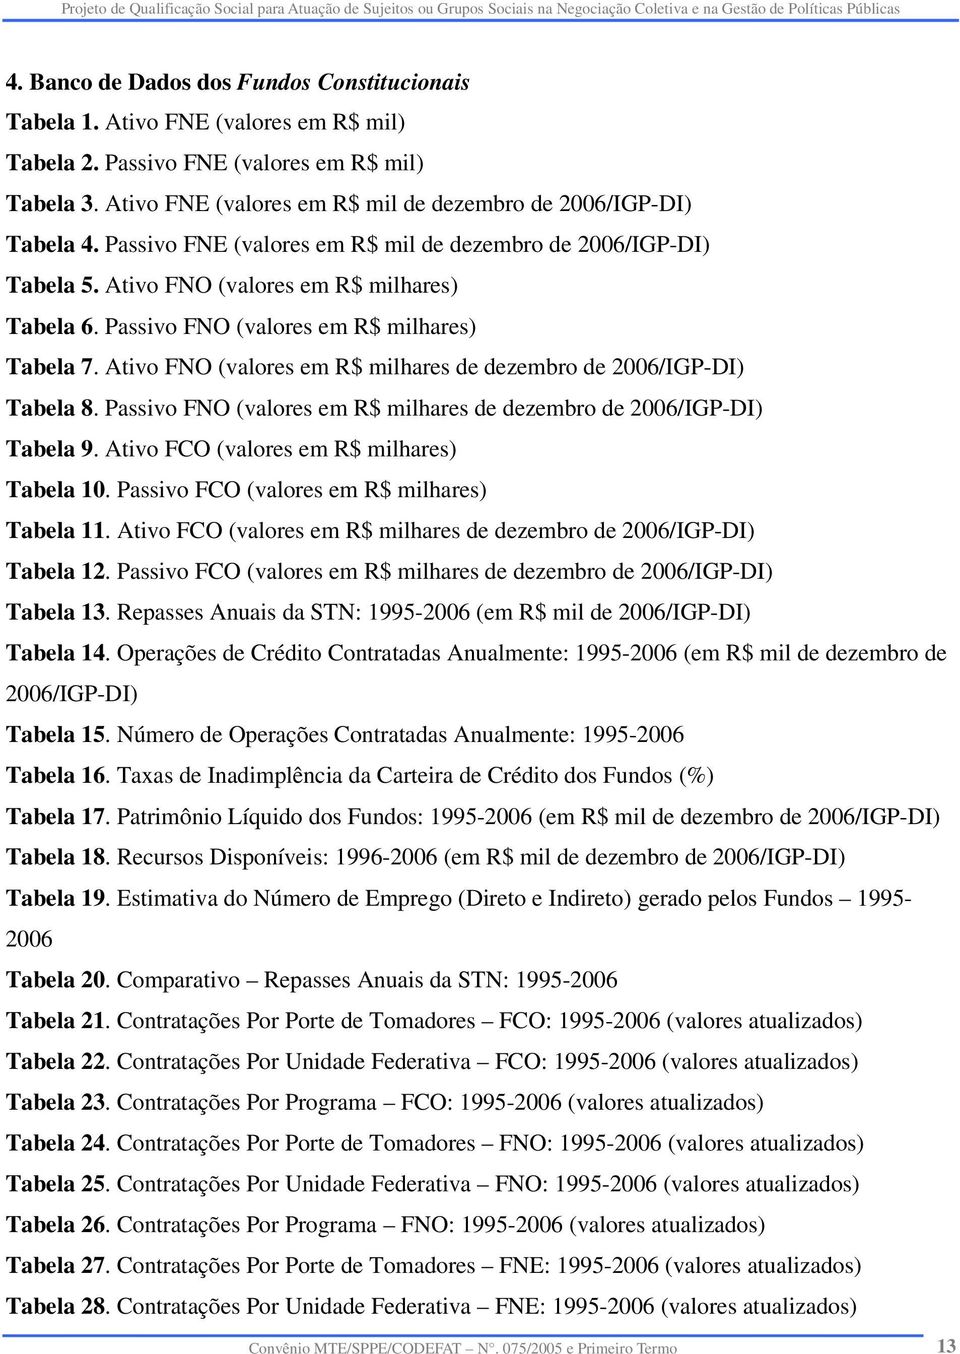 Passivo FNO (valores em R$ milhares) Tabela 7. Ativo FNO (valores em R$ milhares de dezembro de 2006/IGP-DI) Tabela 8. Passivo FNO (valores em R$ milhares de dezembro de 2006/IGP-DI) Tabela 9.